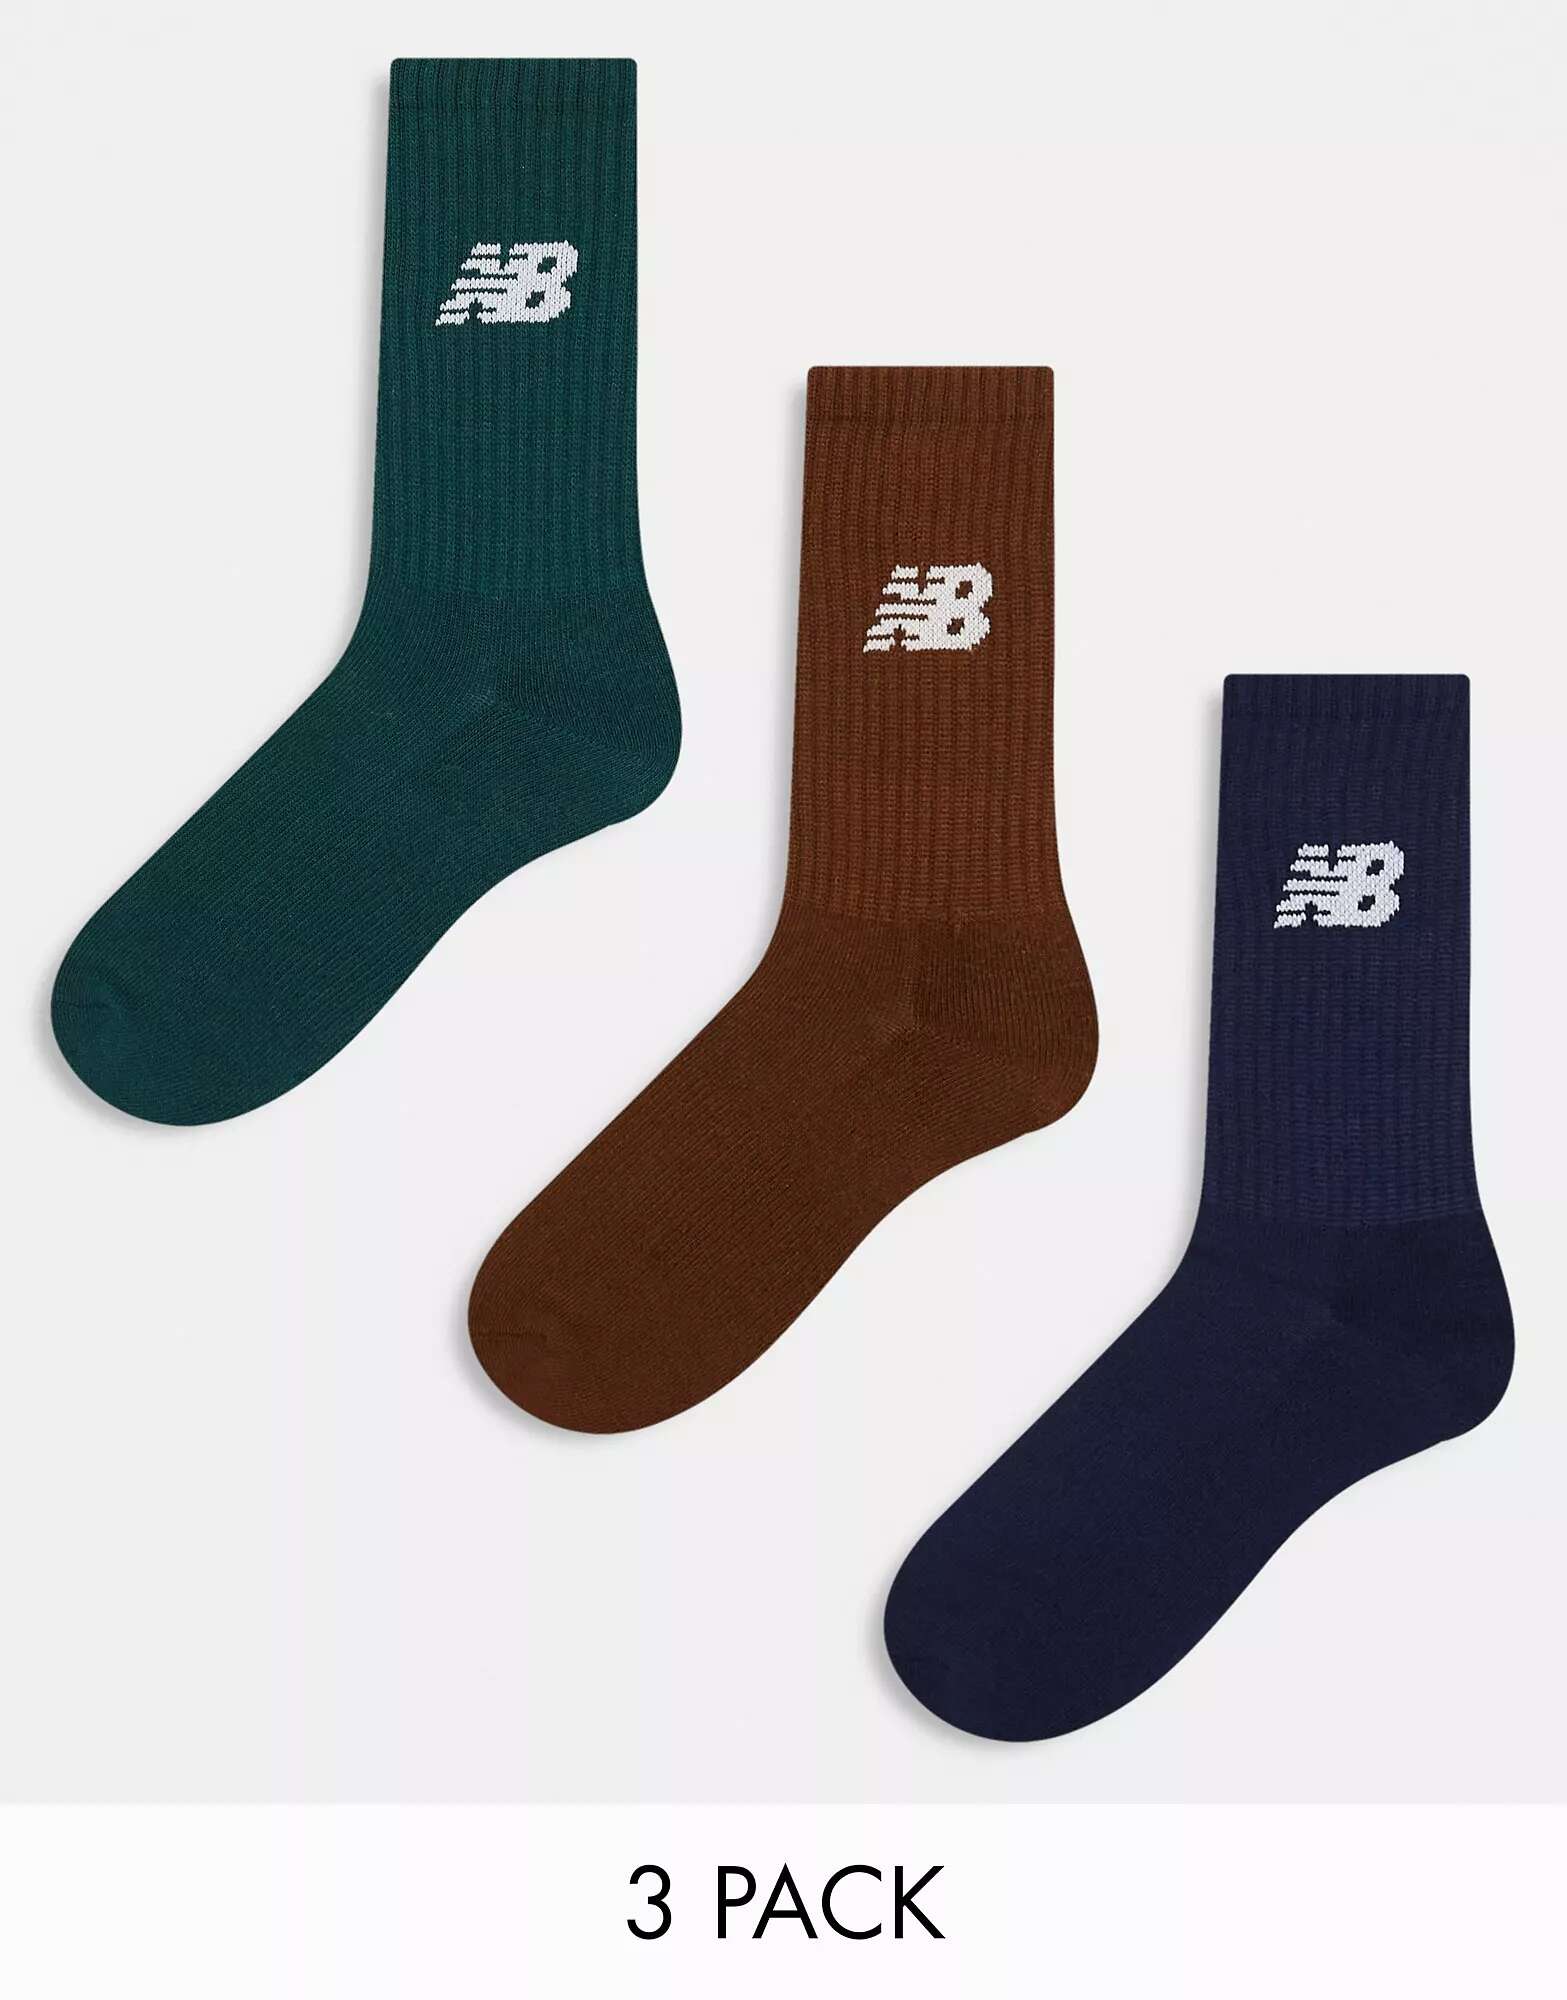 цена Три пары носков с логотипом New Balance цвета хаки, темно-синего и коричневого цвета